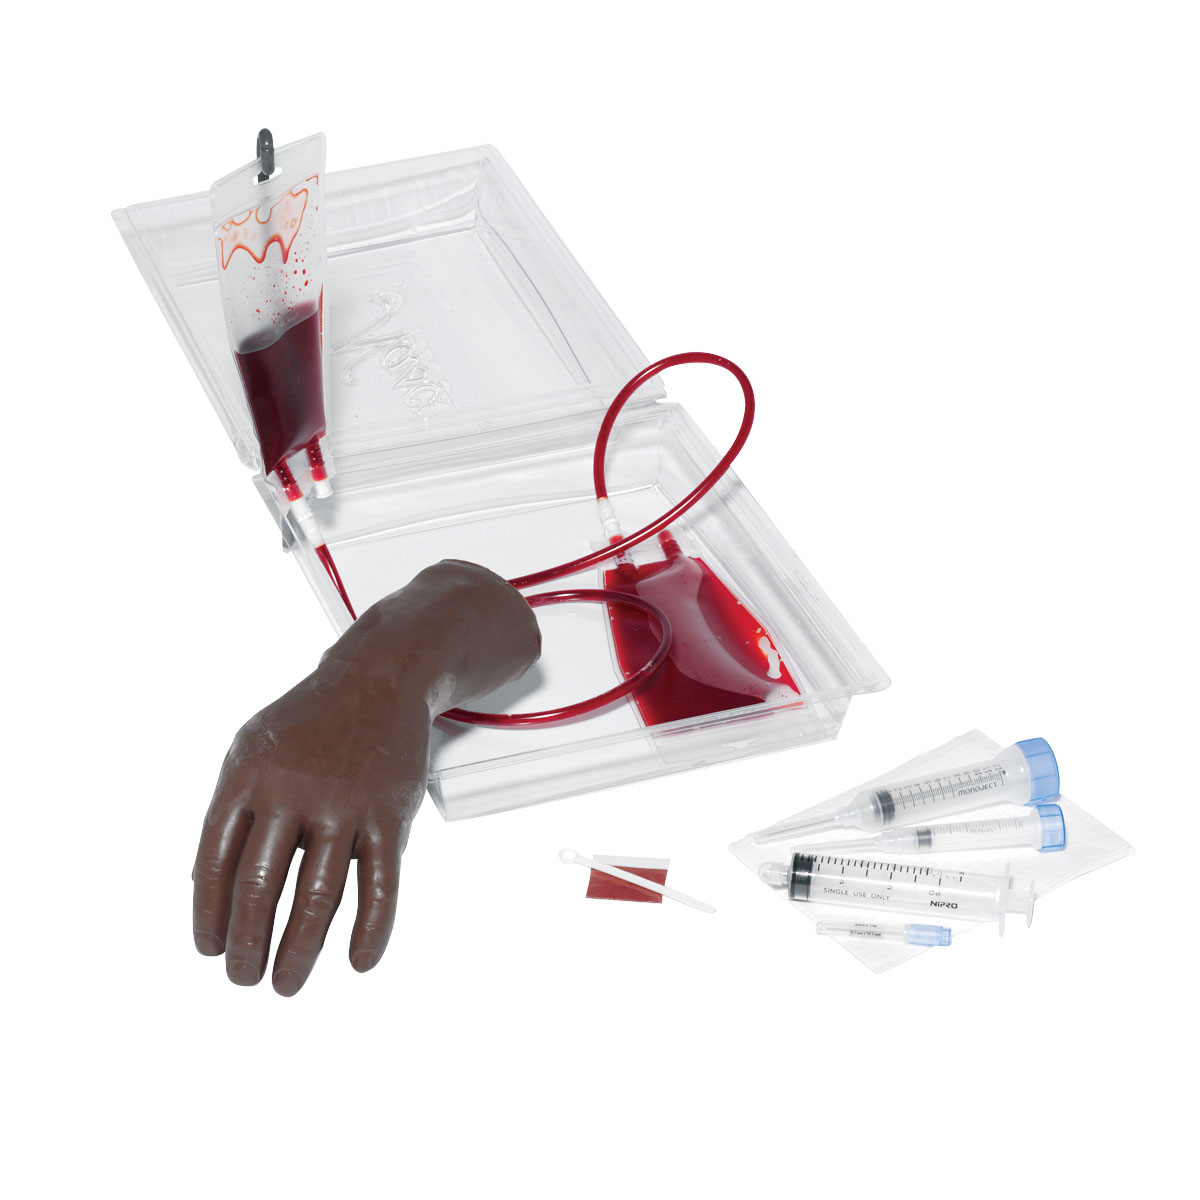 Переносной тренажер «Рука с кистью» Life/form® для внутривенных инъекций Темная кожа